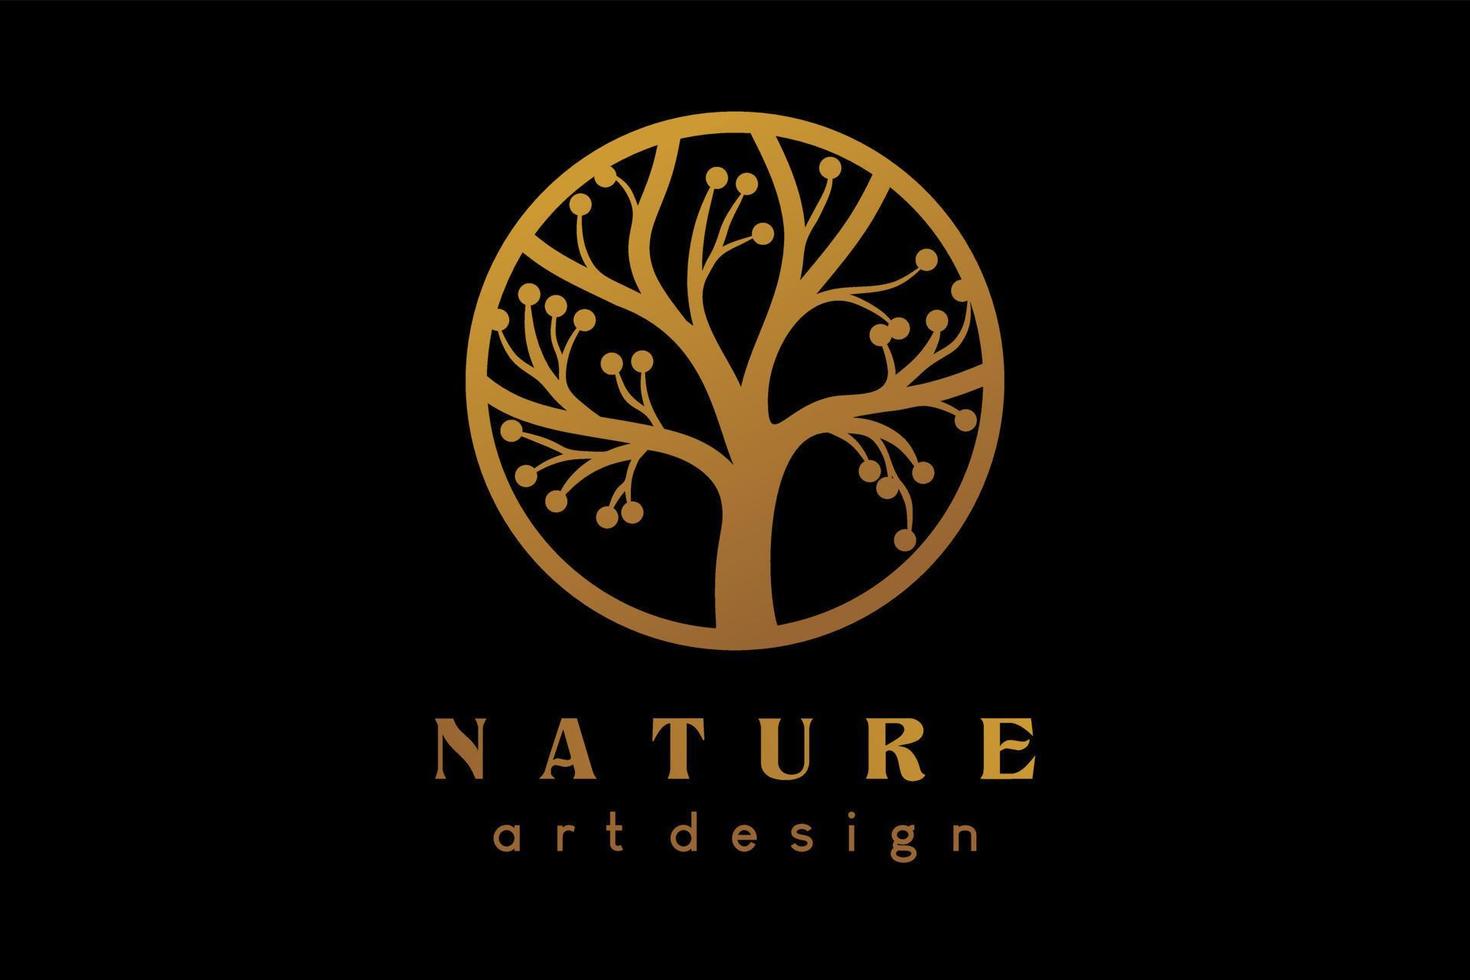 Tree logo design with creative concept vector